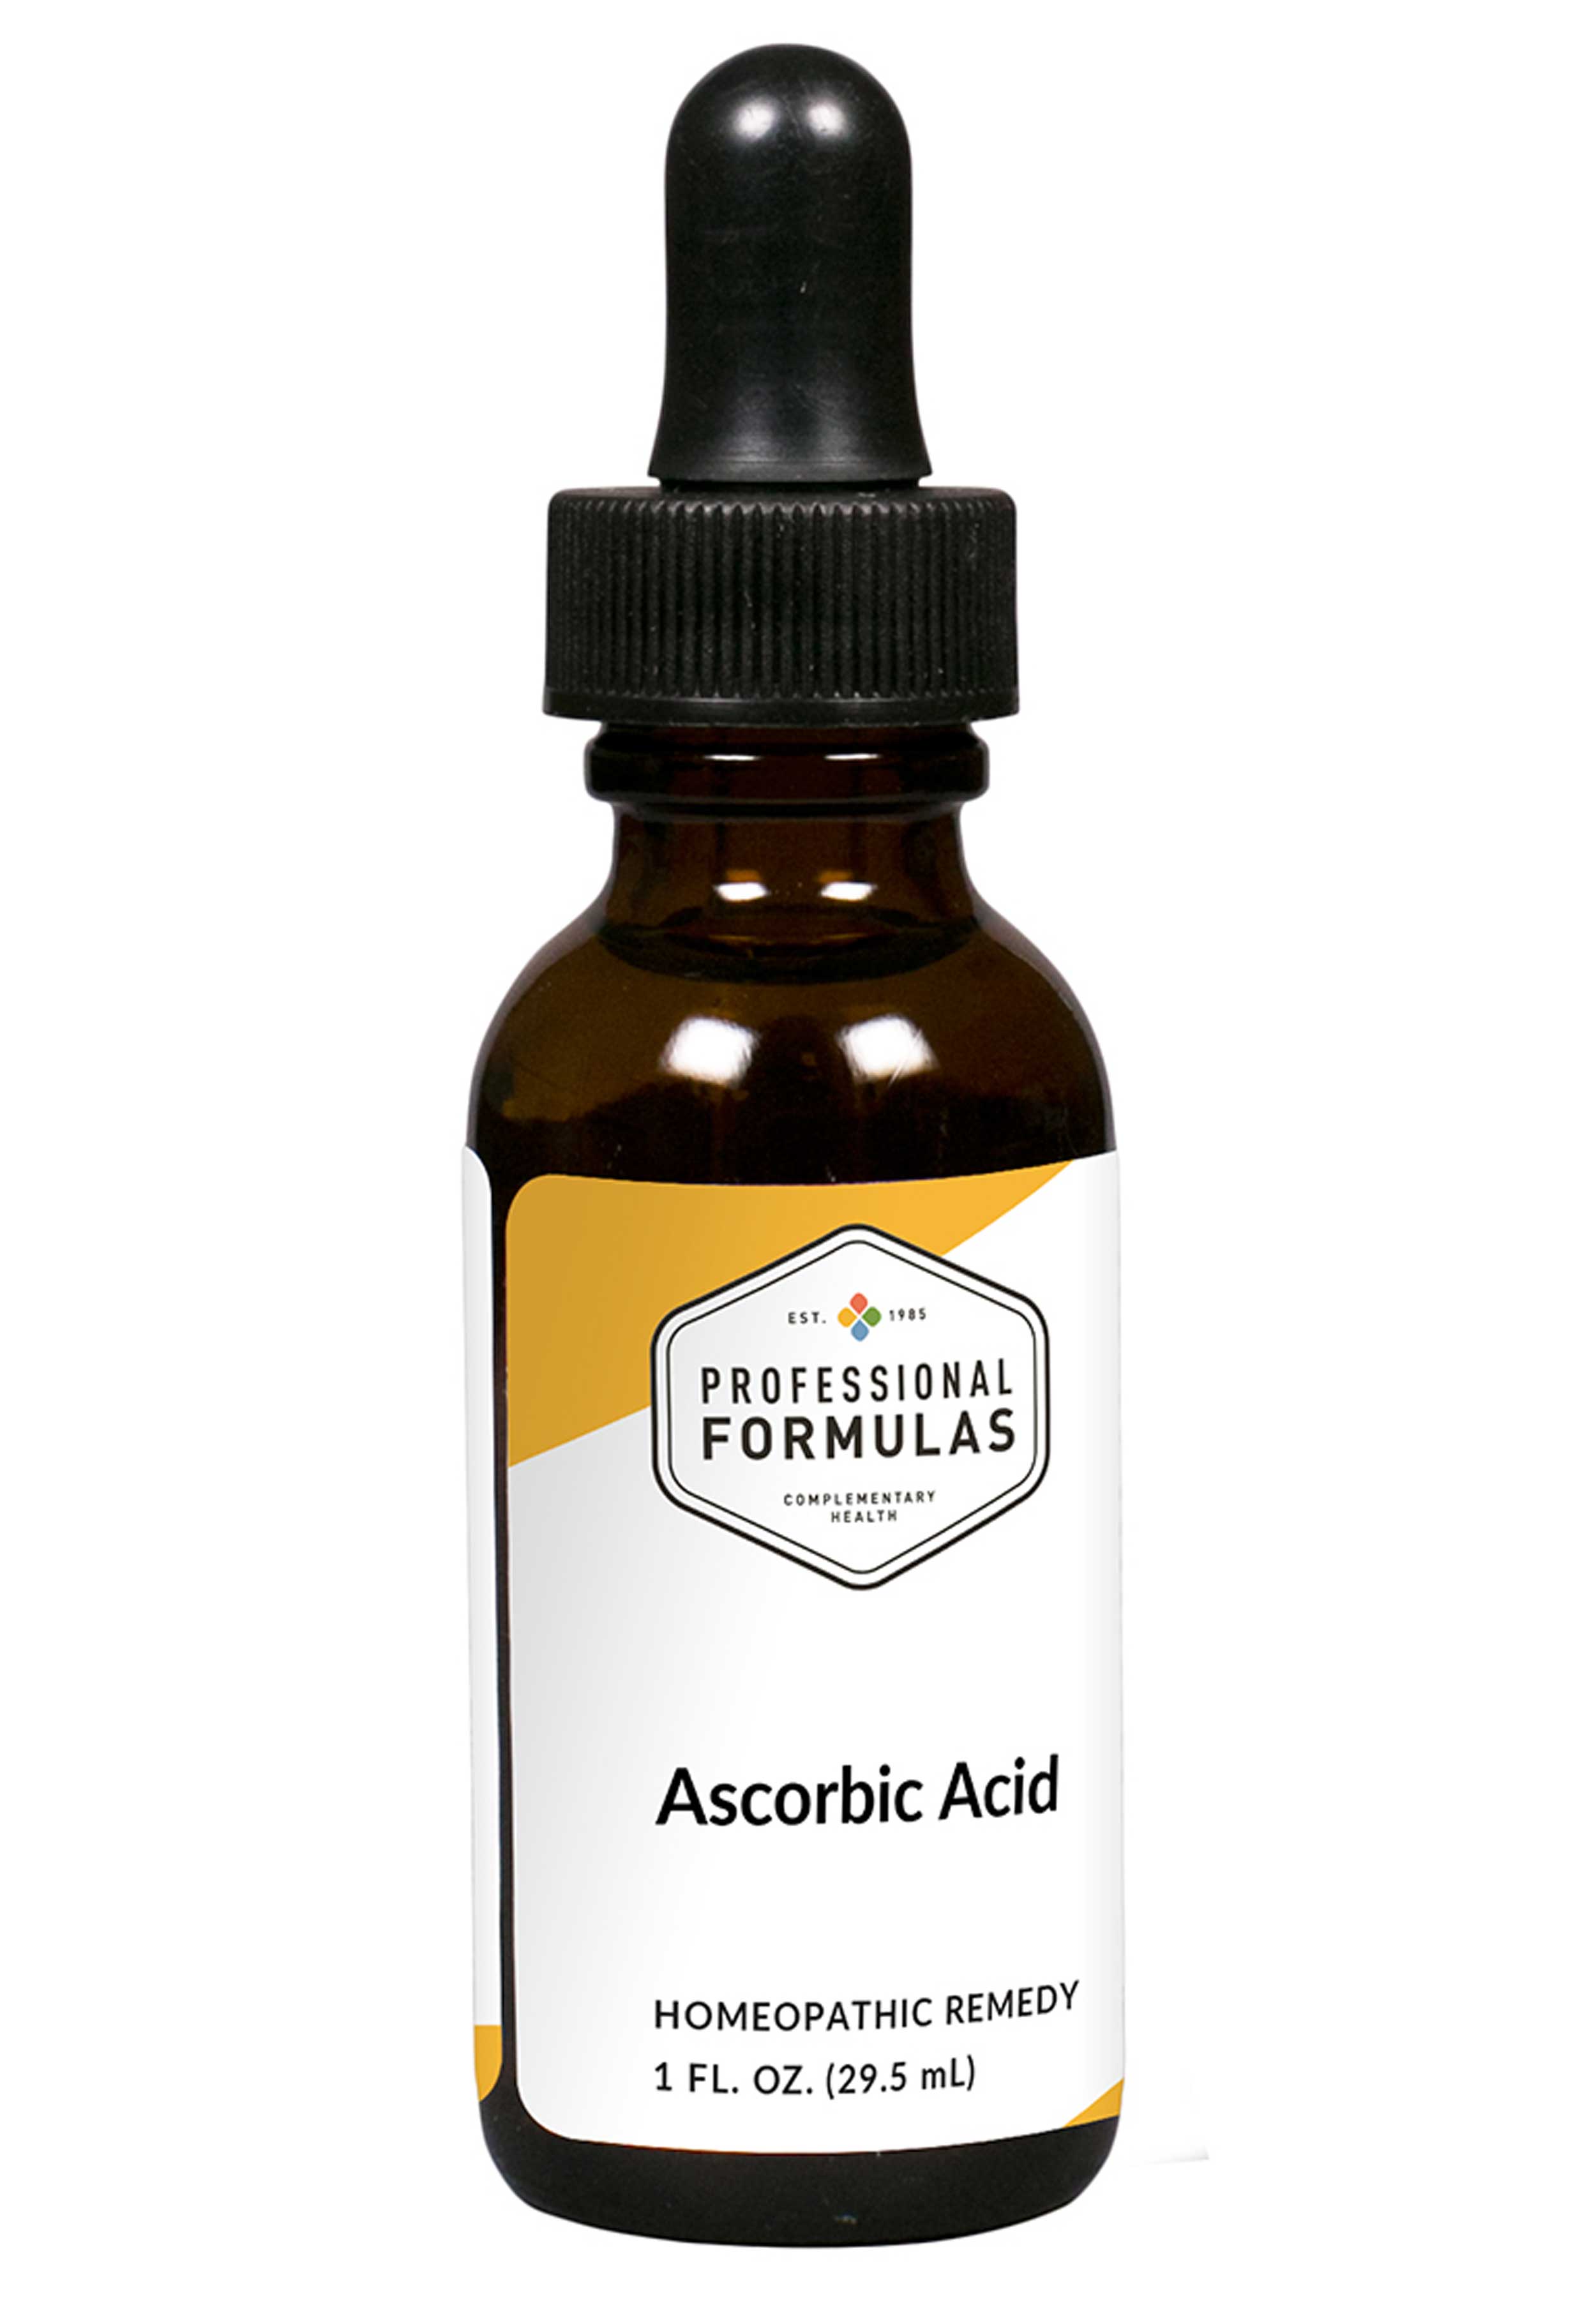 Professional Formulas Ascorbic Acid